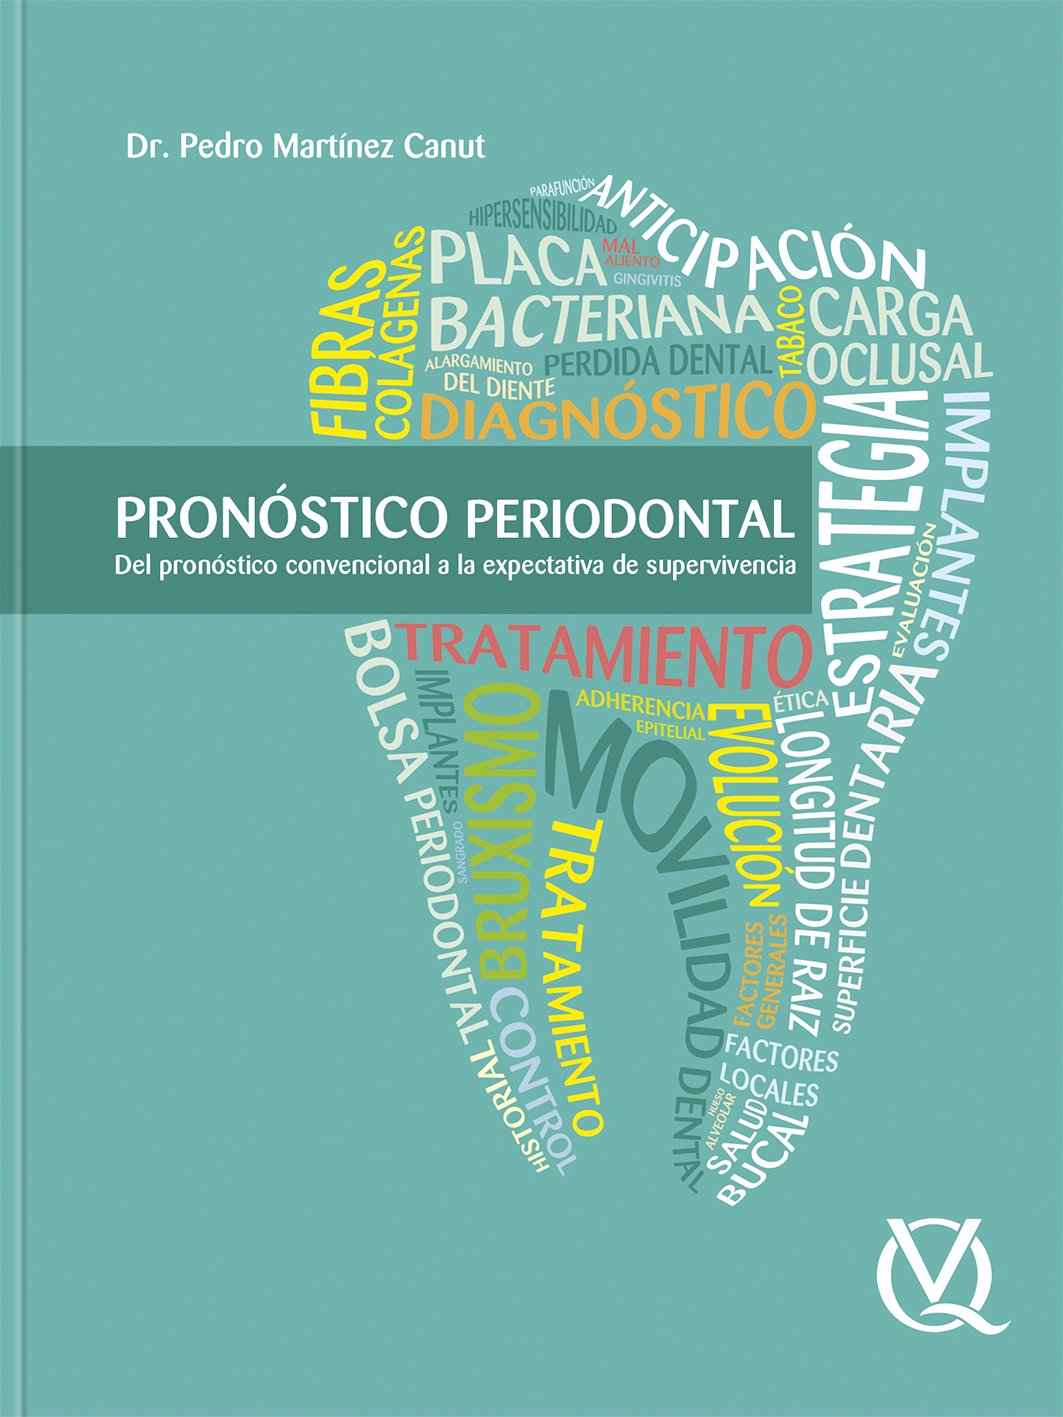 Martínez Canut: Pronóstico periodontal del pronóstico convencional a la expectativa de supervivencia